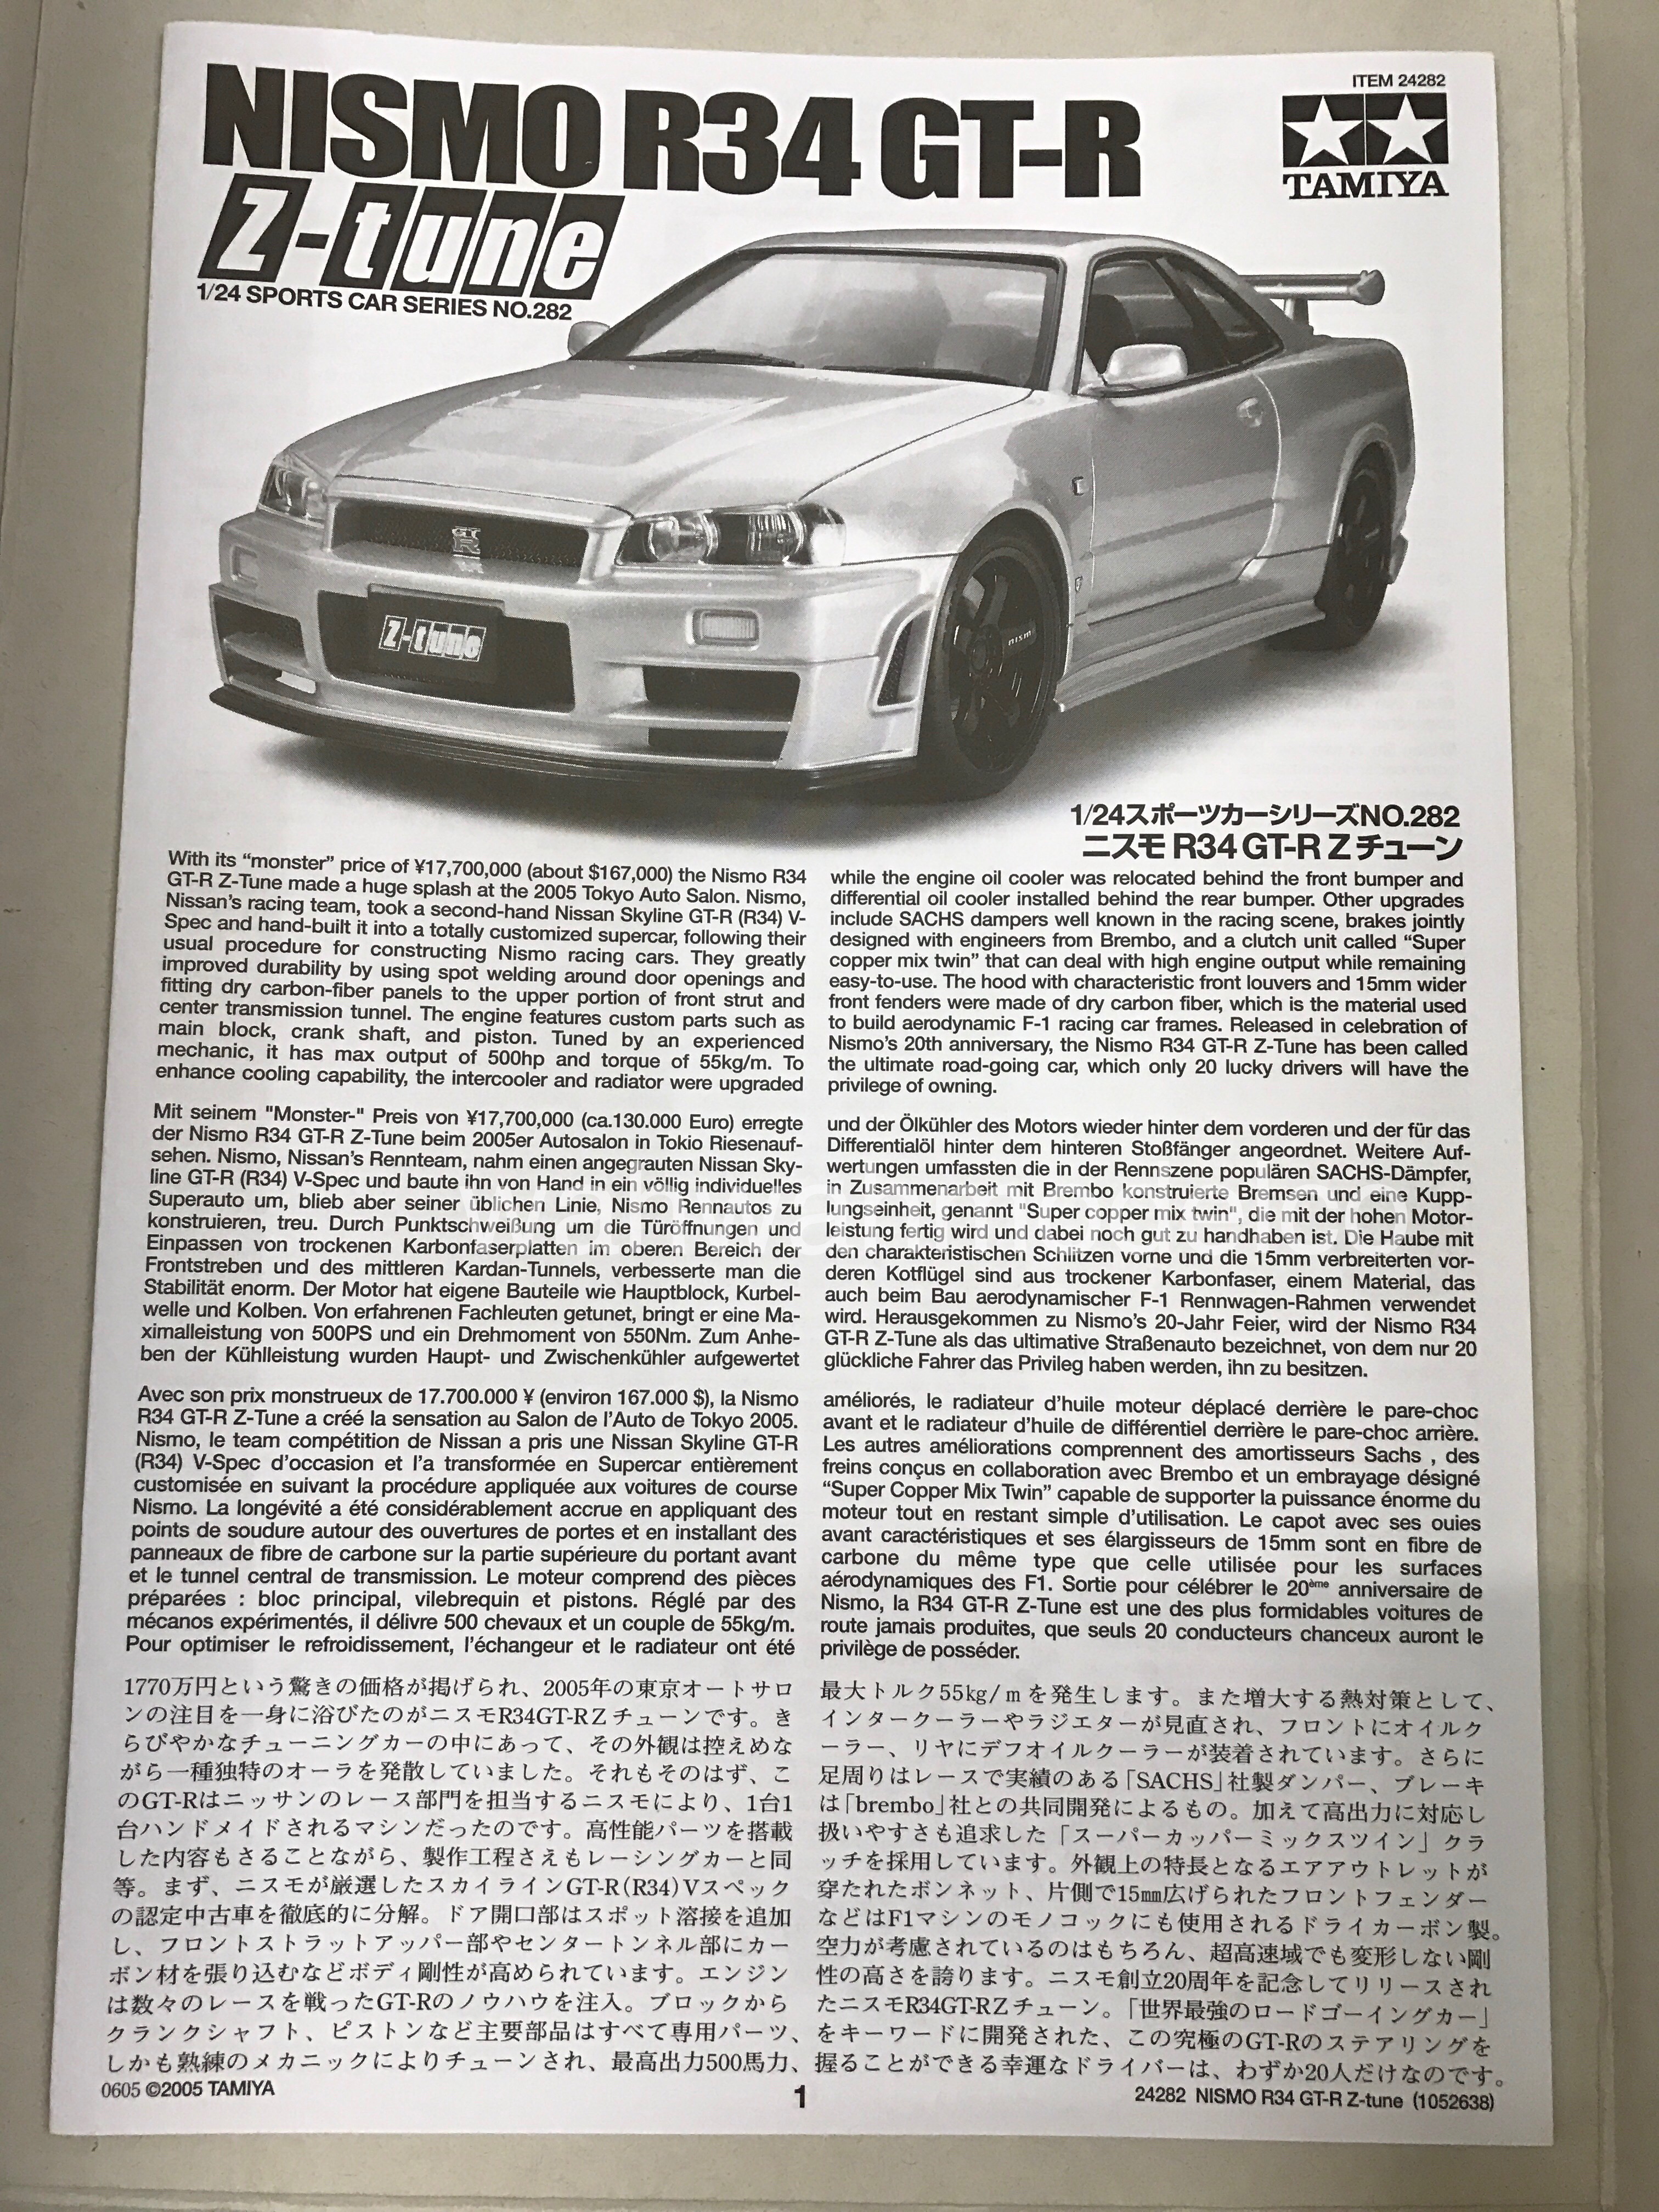 Tamiya Nissan Skyline GT-R R34 - Nismo Z-Tune 1/24 Scale Model Kit 24282